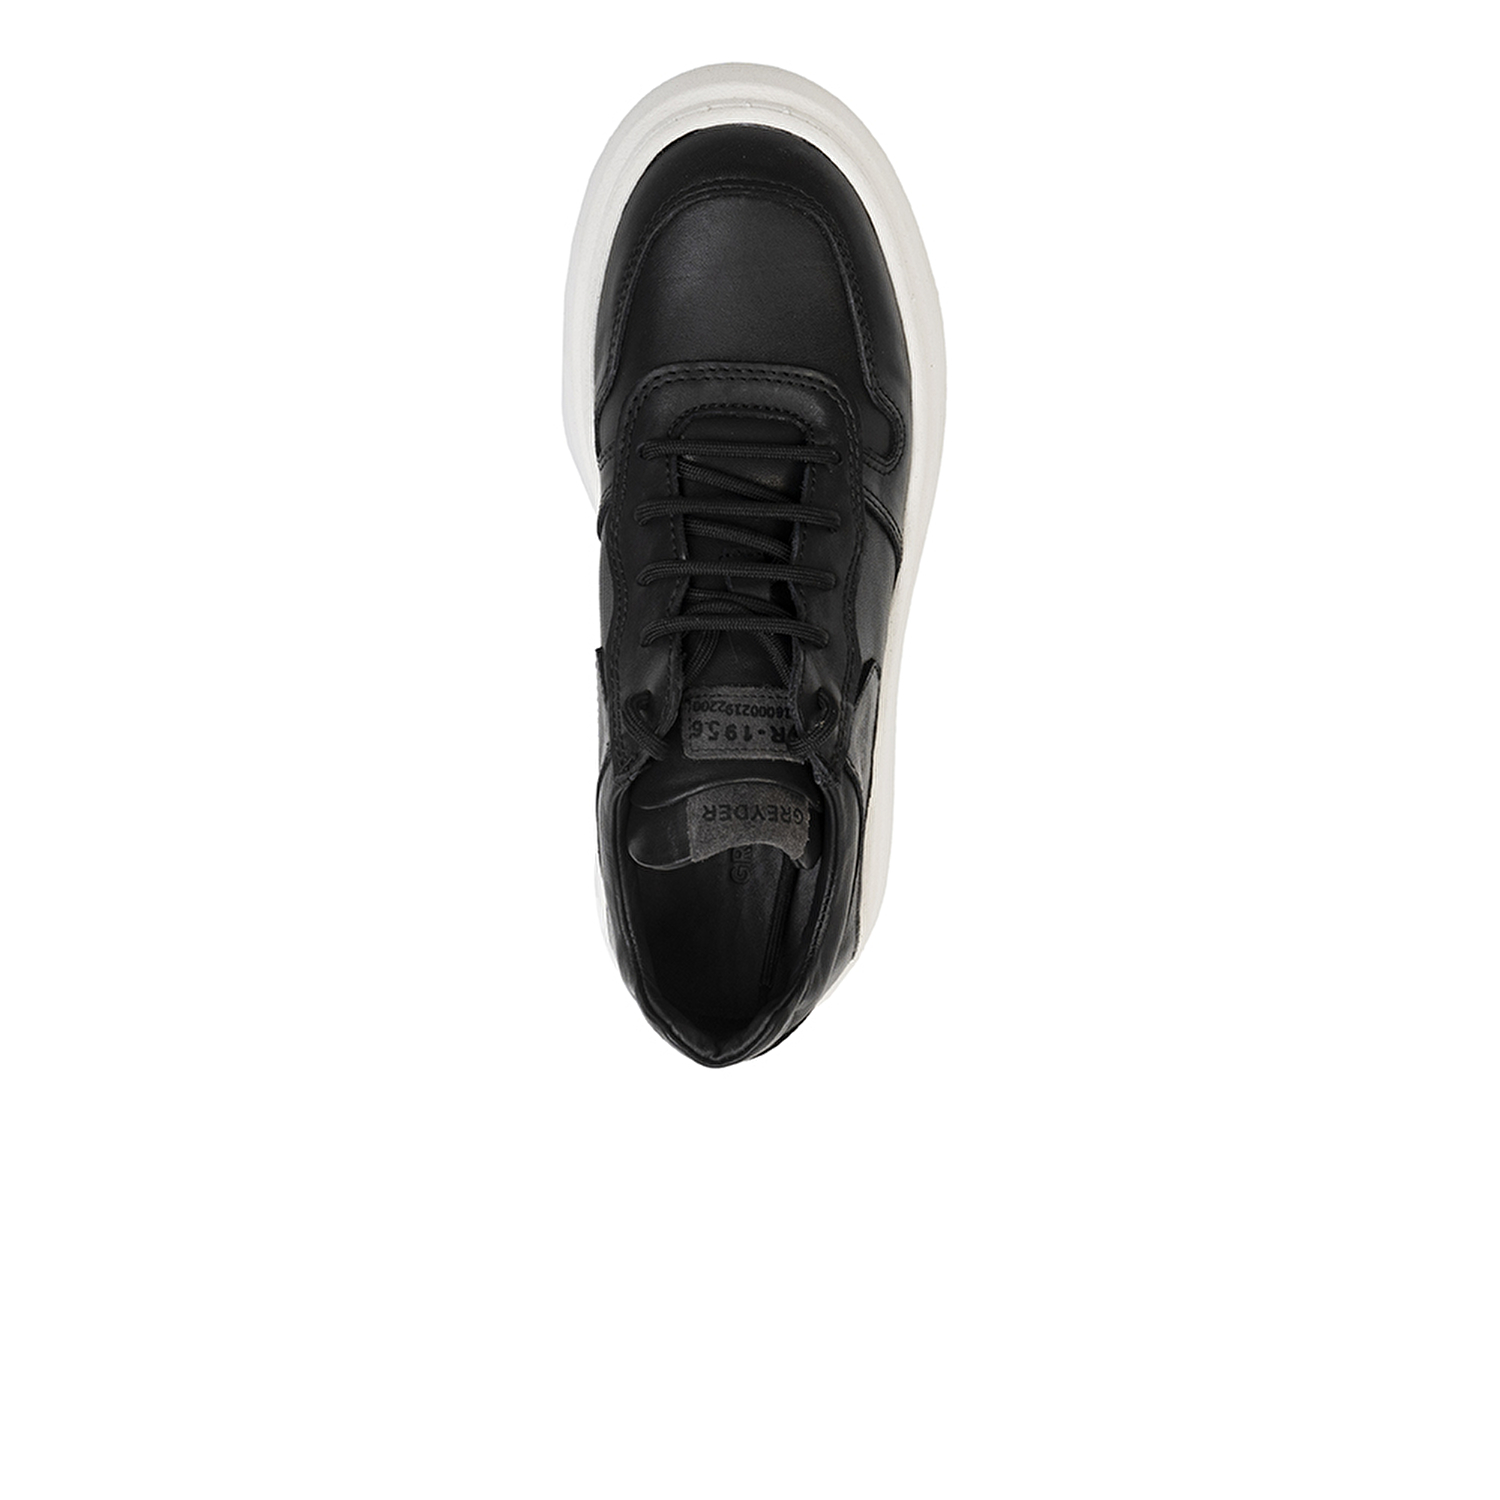 Kadın Siyah Hakiki Deri Sneaker Ayakkabı 3K2SA33120-3